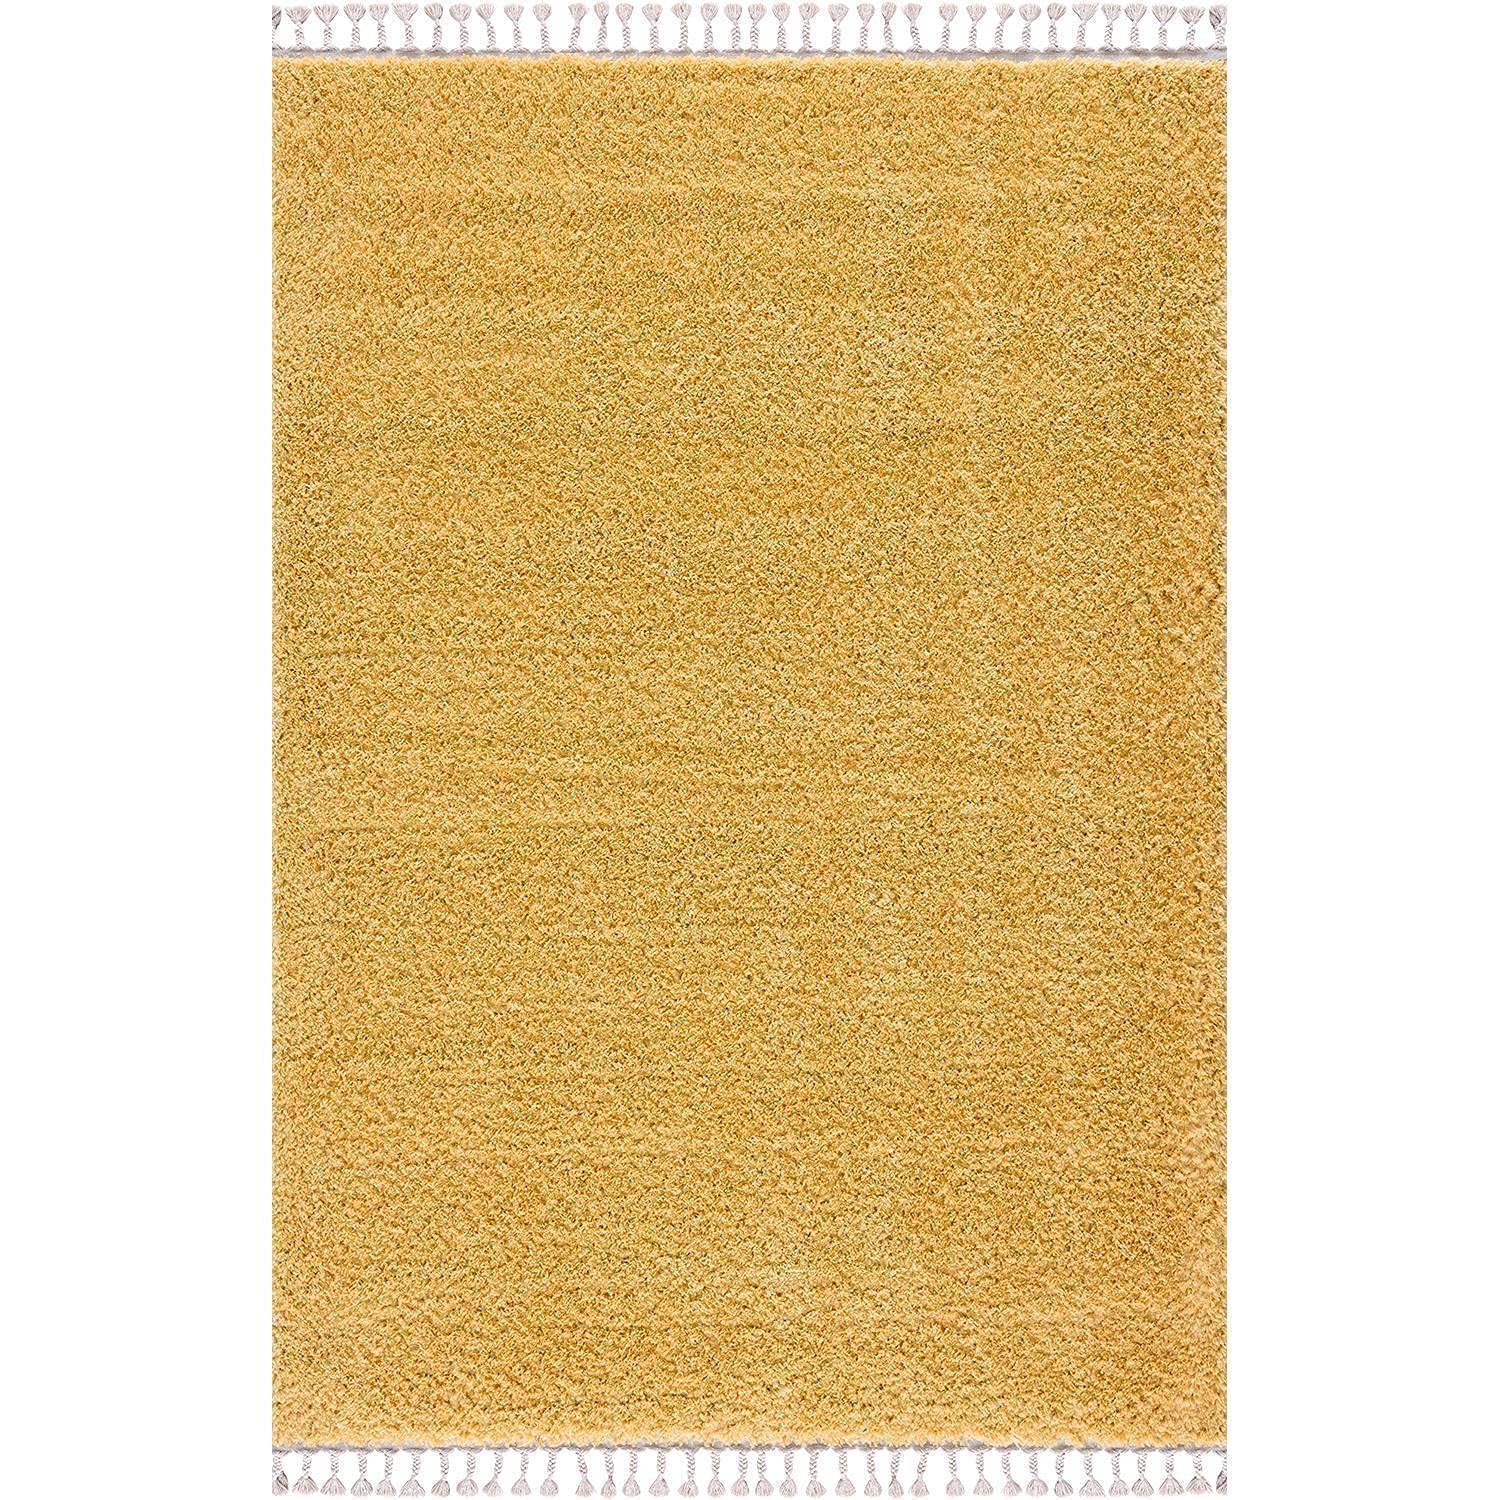 carpet city Hochflor Teppich Wohnzimmer - Einfarbig Gelb - 120x160 cm - Shaggyteppich Langflor - Kettfäden - Schlafzimmerteppich Flauschig Weich - Moderne Wohnzimmerteppiche